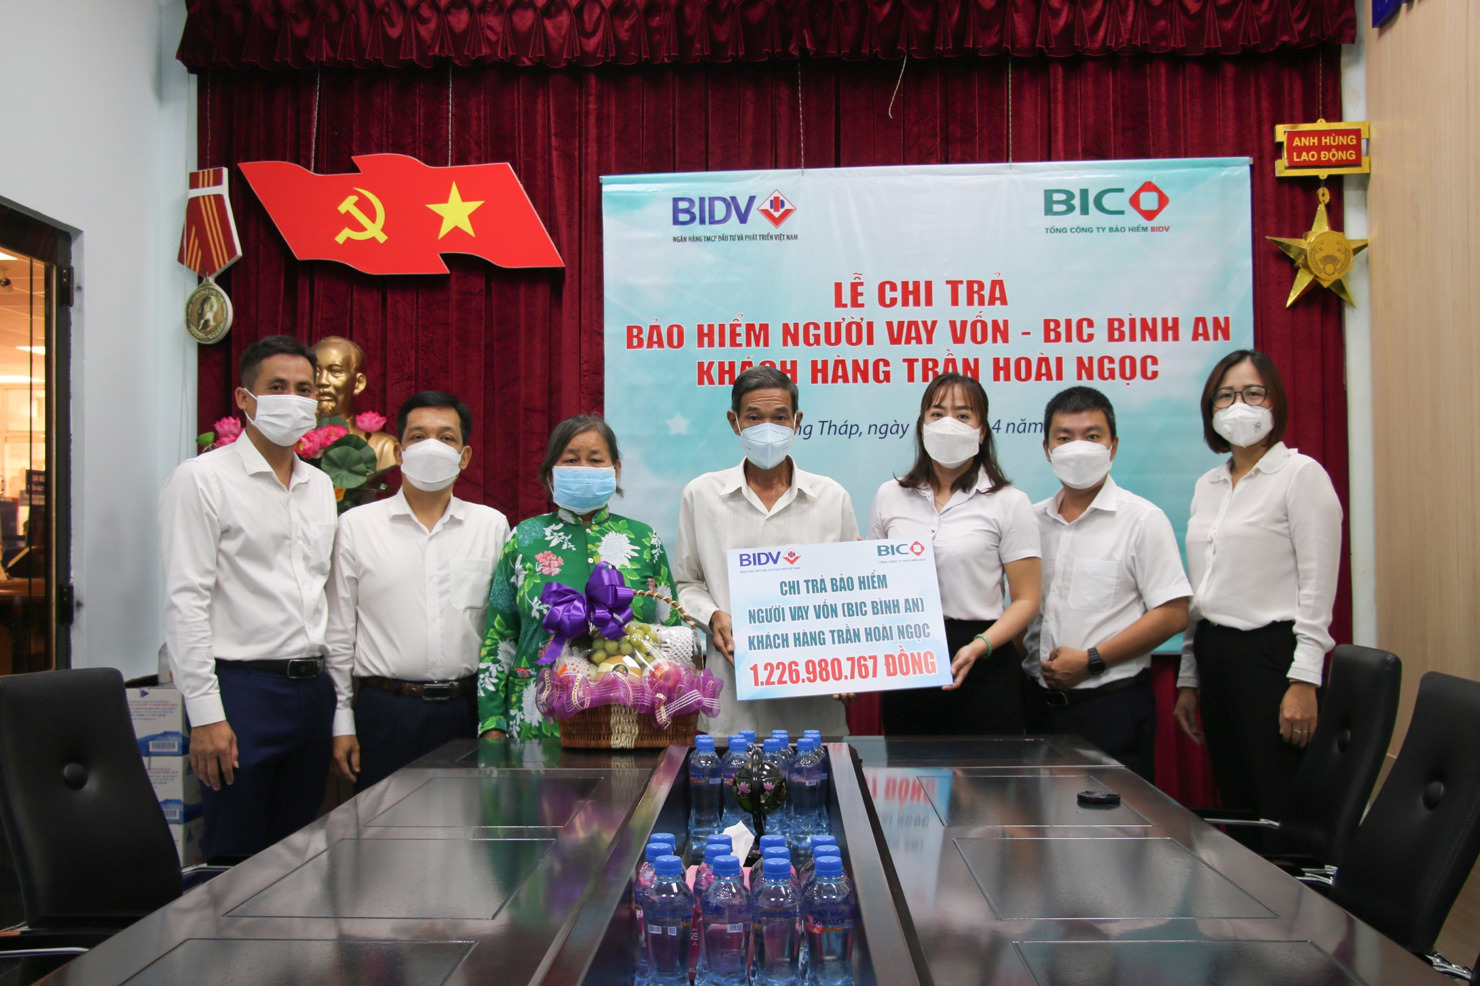 Đại diện BIC trao hơn 1,2 tỷ đồng tiền bảo hiểm người vay vốn - BIC Bình An - cho gia đình khách hàng Trần Hoài Ngọc. Nguồn: BIC.